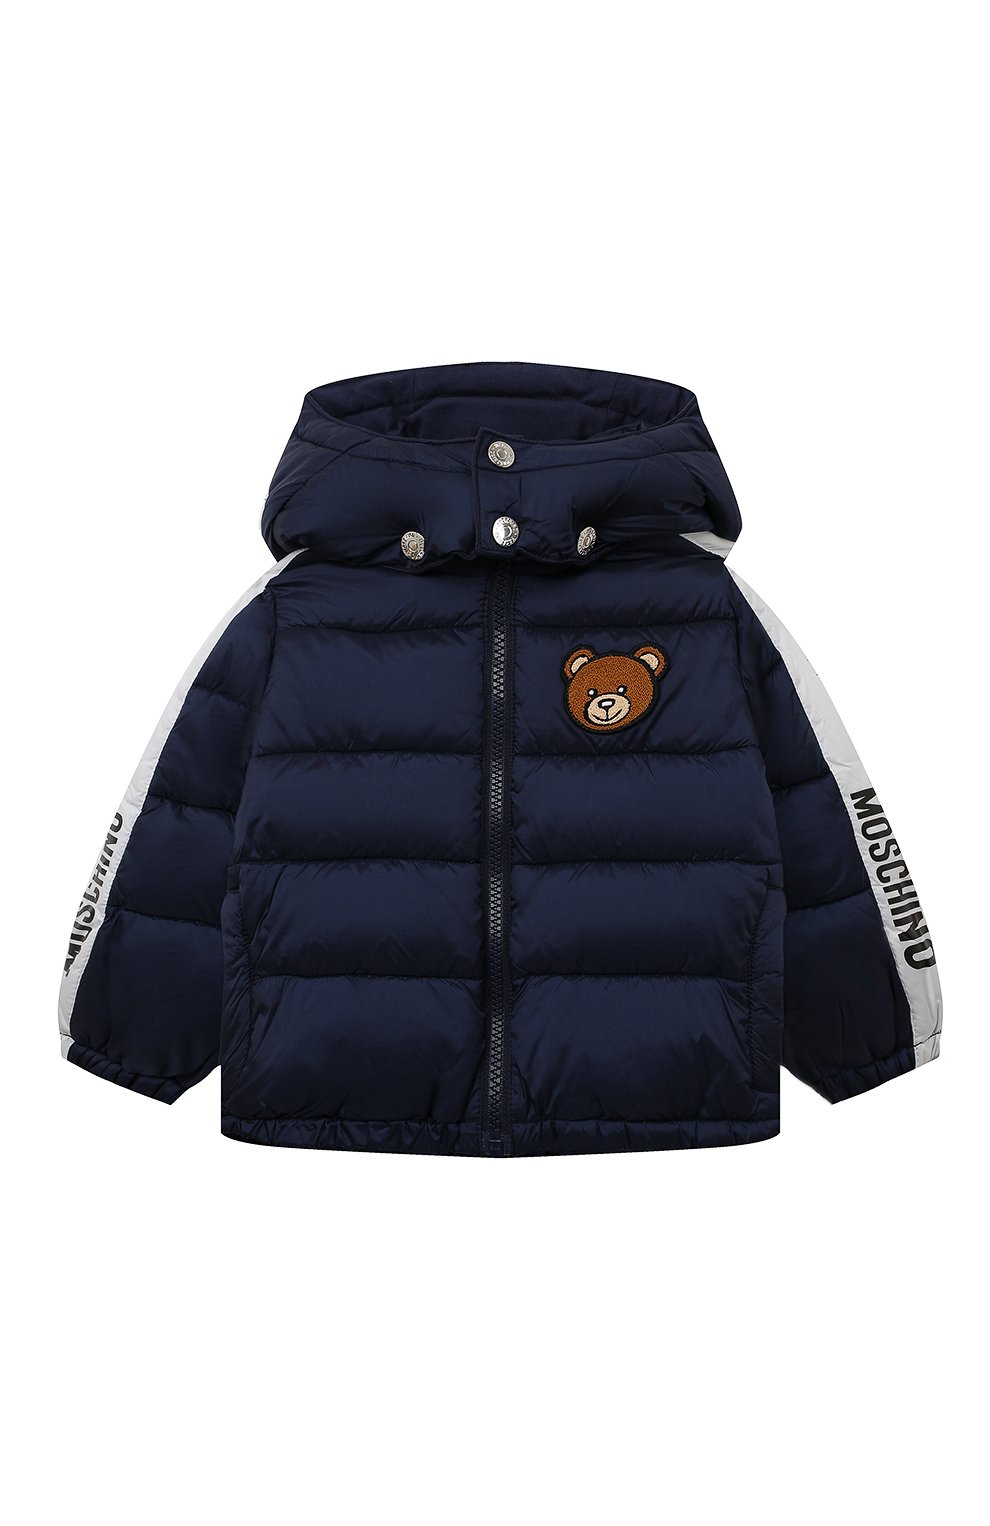 Верхняя одежда Moschino, Утепленная куртка Moschino, Китай, Синий, Полиамид: 100%; Подкладка-хлопок: 100%; Наполнитель-полиэстер: 100%;, 12966617  - купить